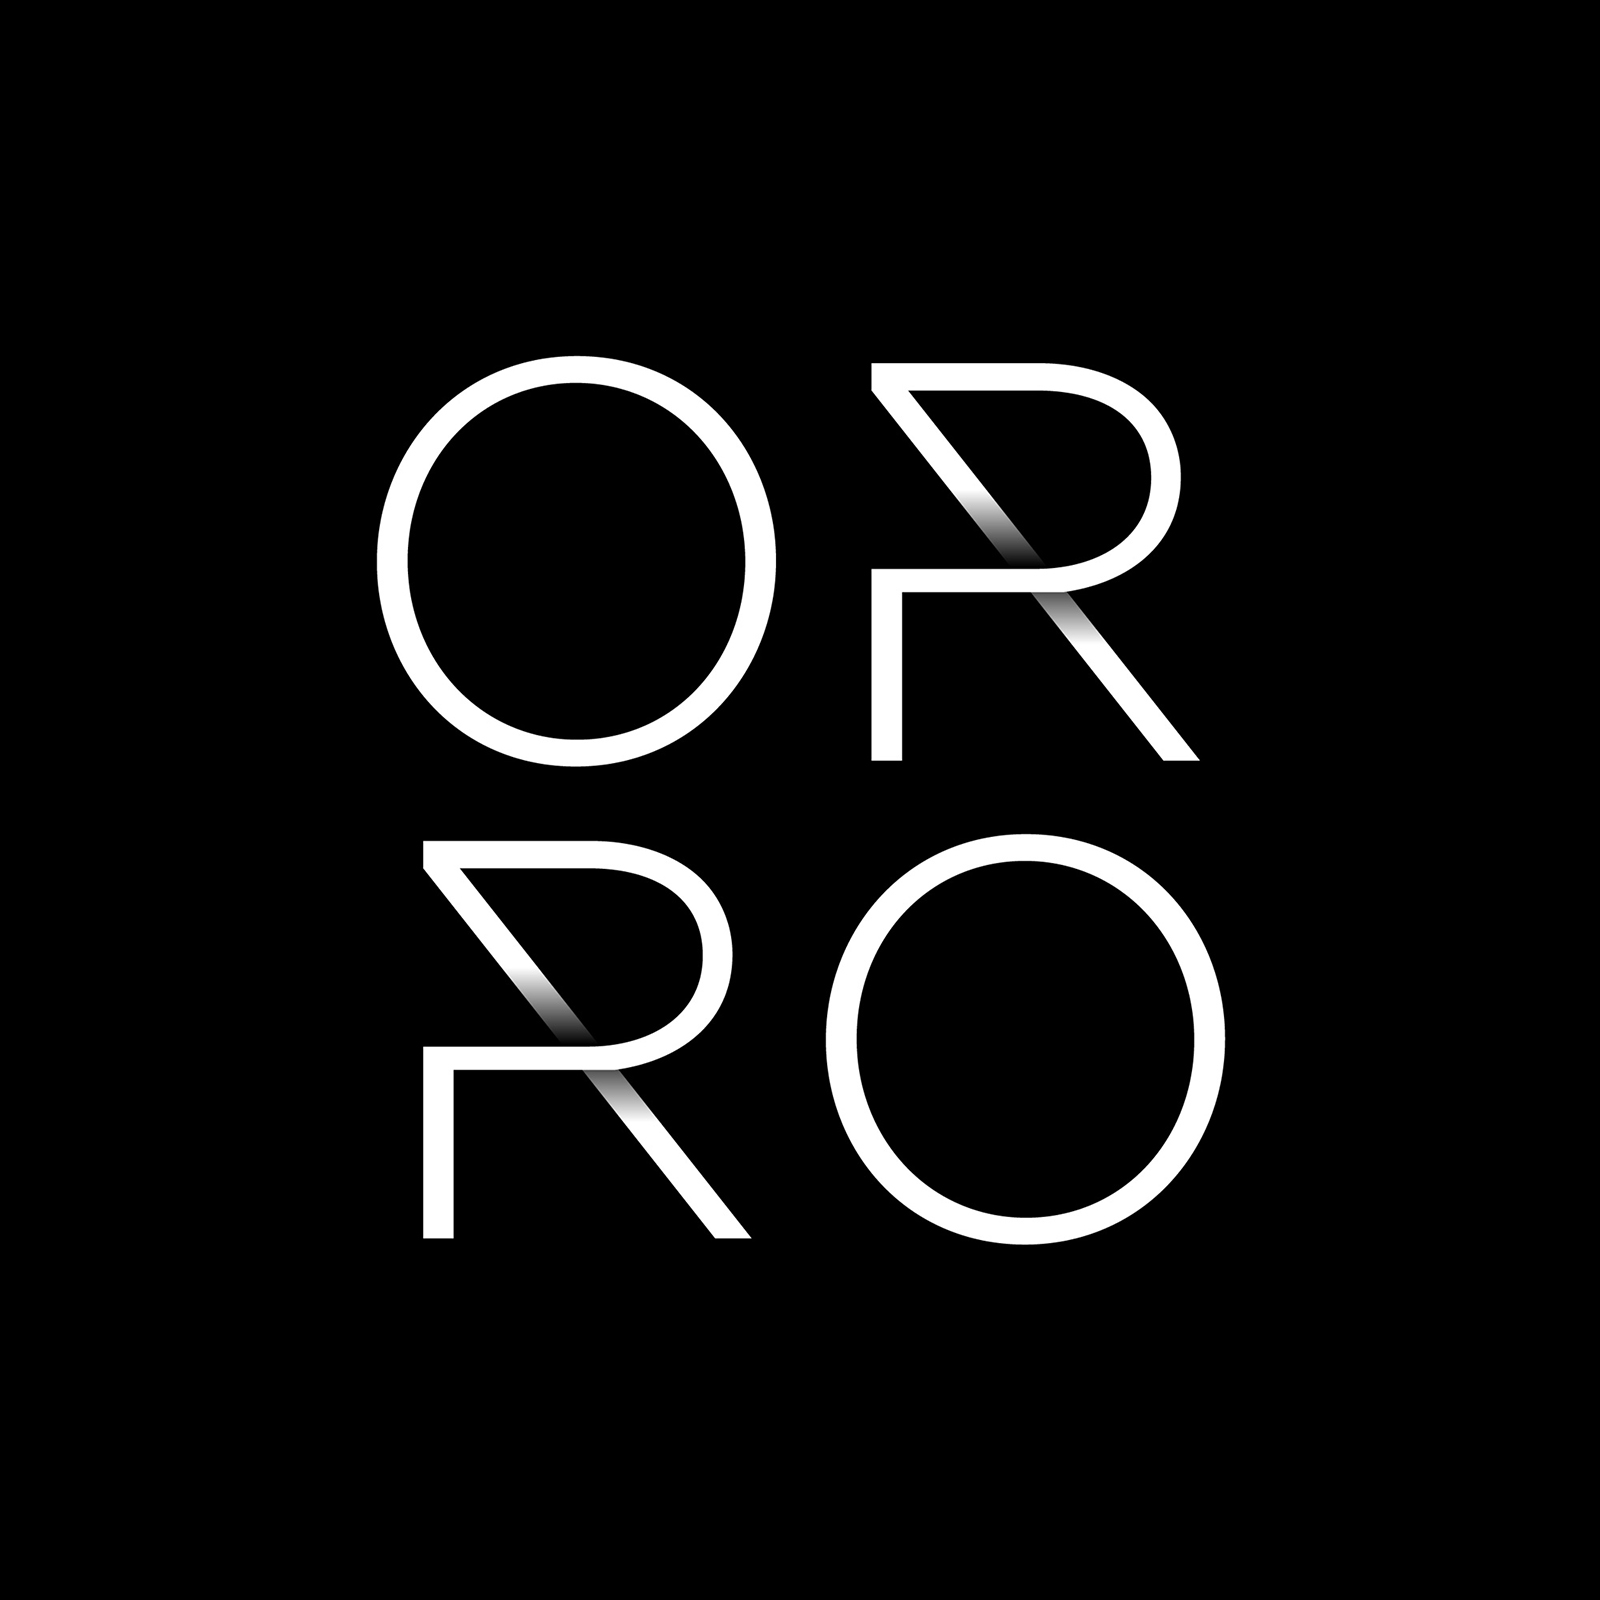 Orro照明系统品牌启用全新的品牌视觉vi设计-vi设计02